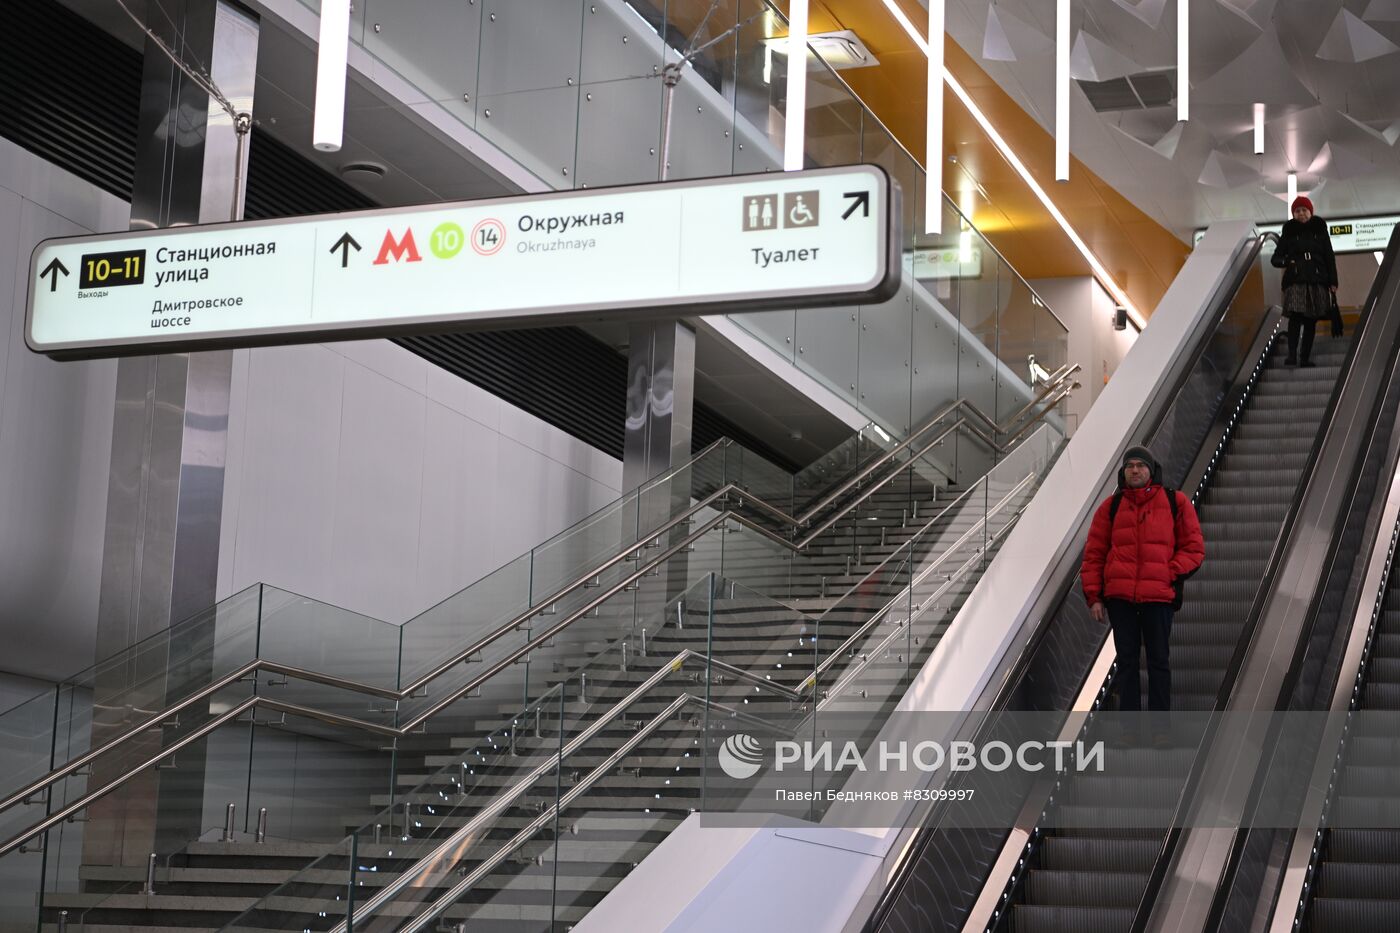 Открытие дополнительного вестибюля станции "Окружная" МЦД1 